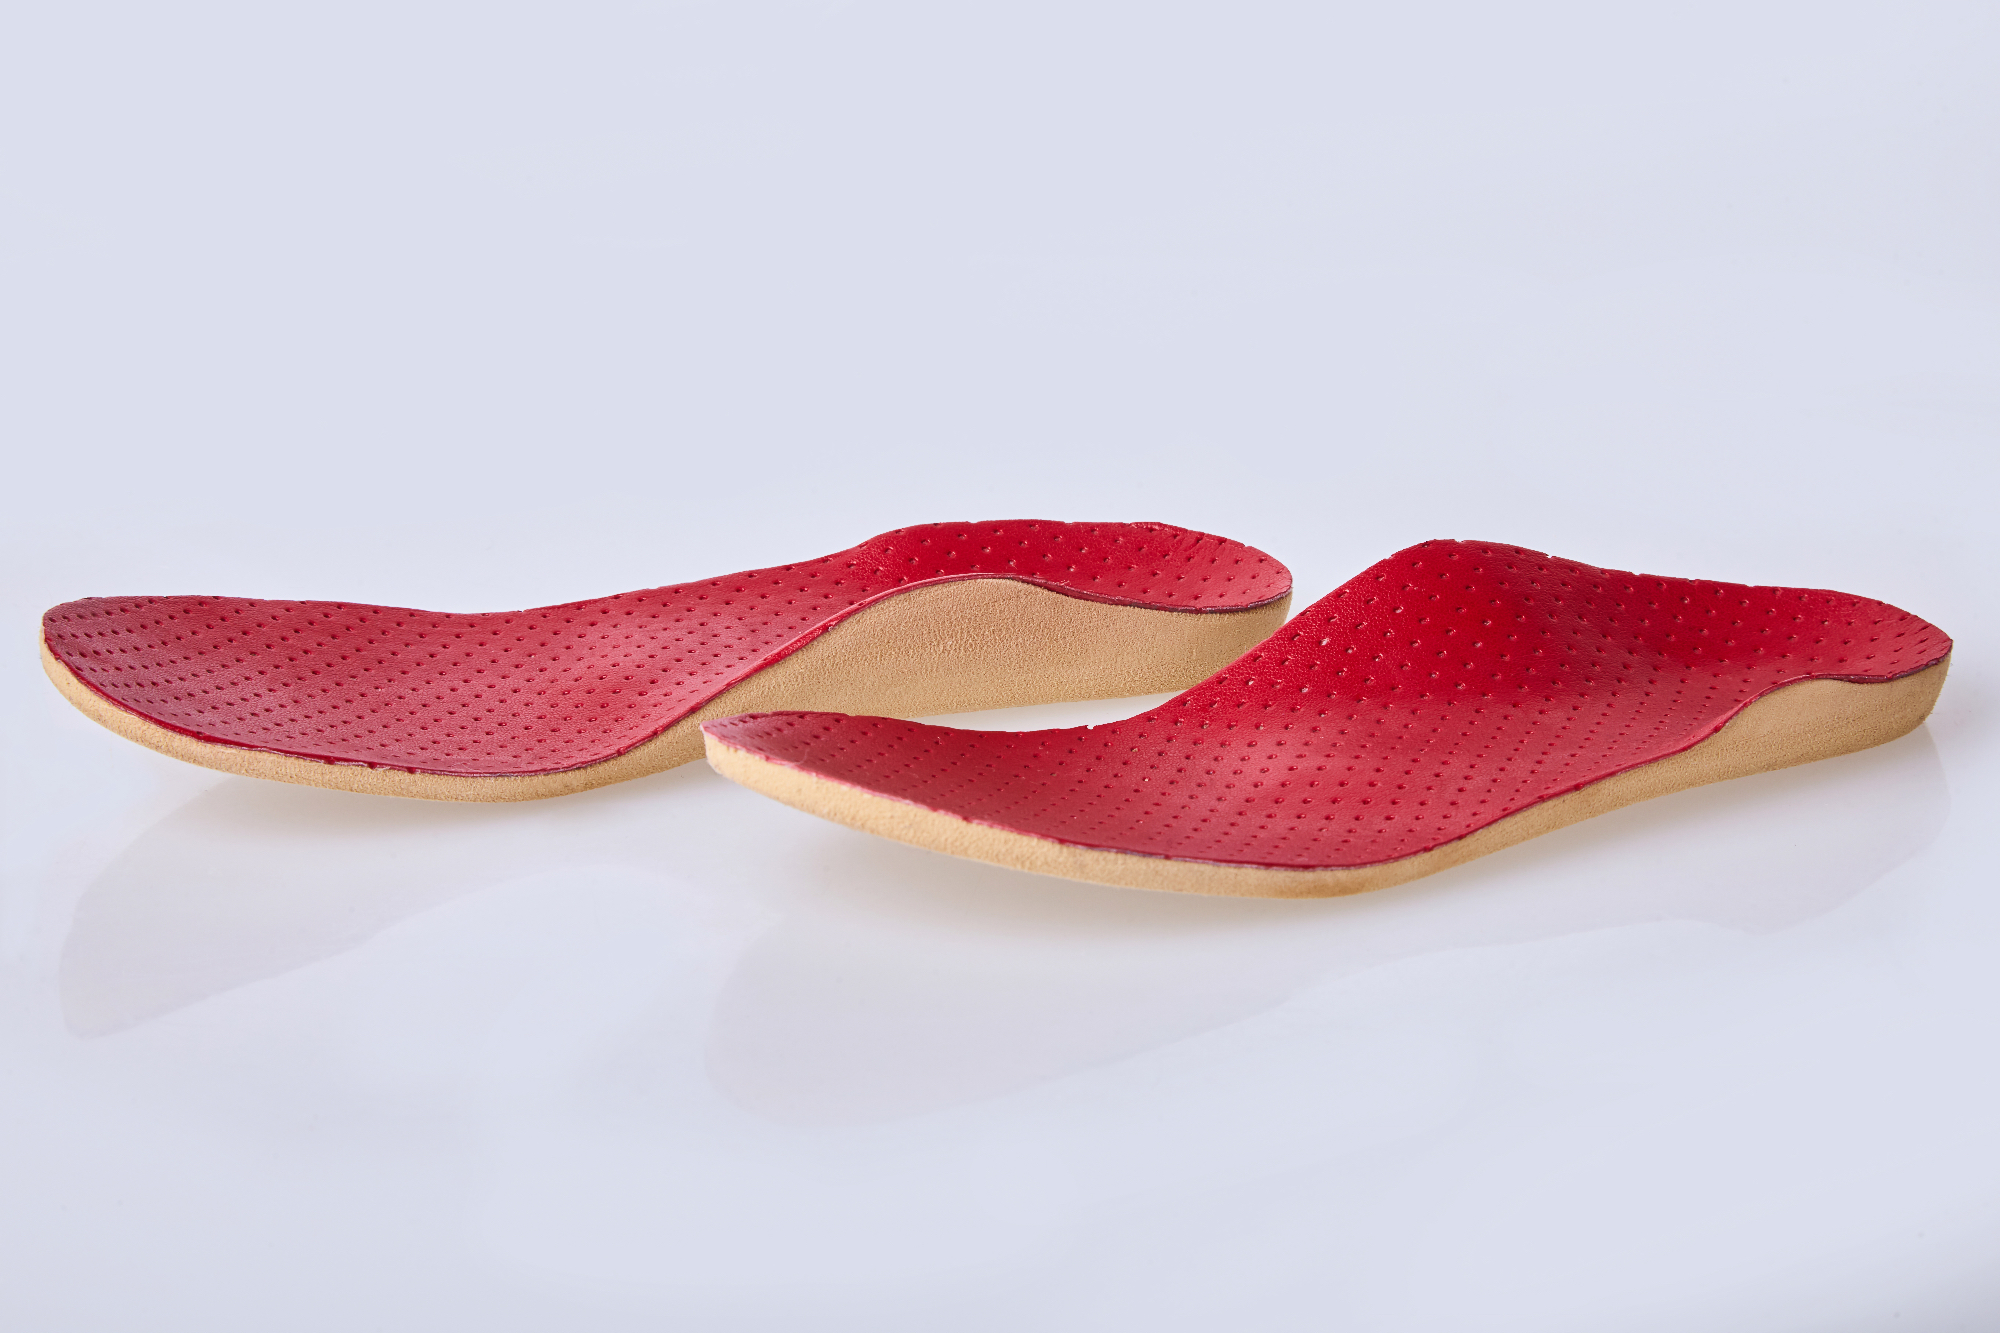 Korekcijski ortopedski vložki za čevlje zagotavljajo kakovostno podporo stopal